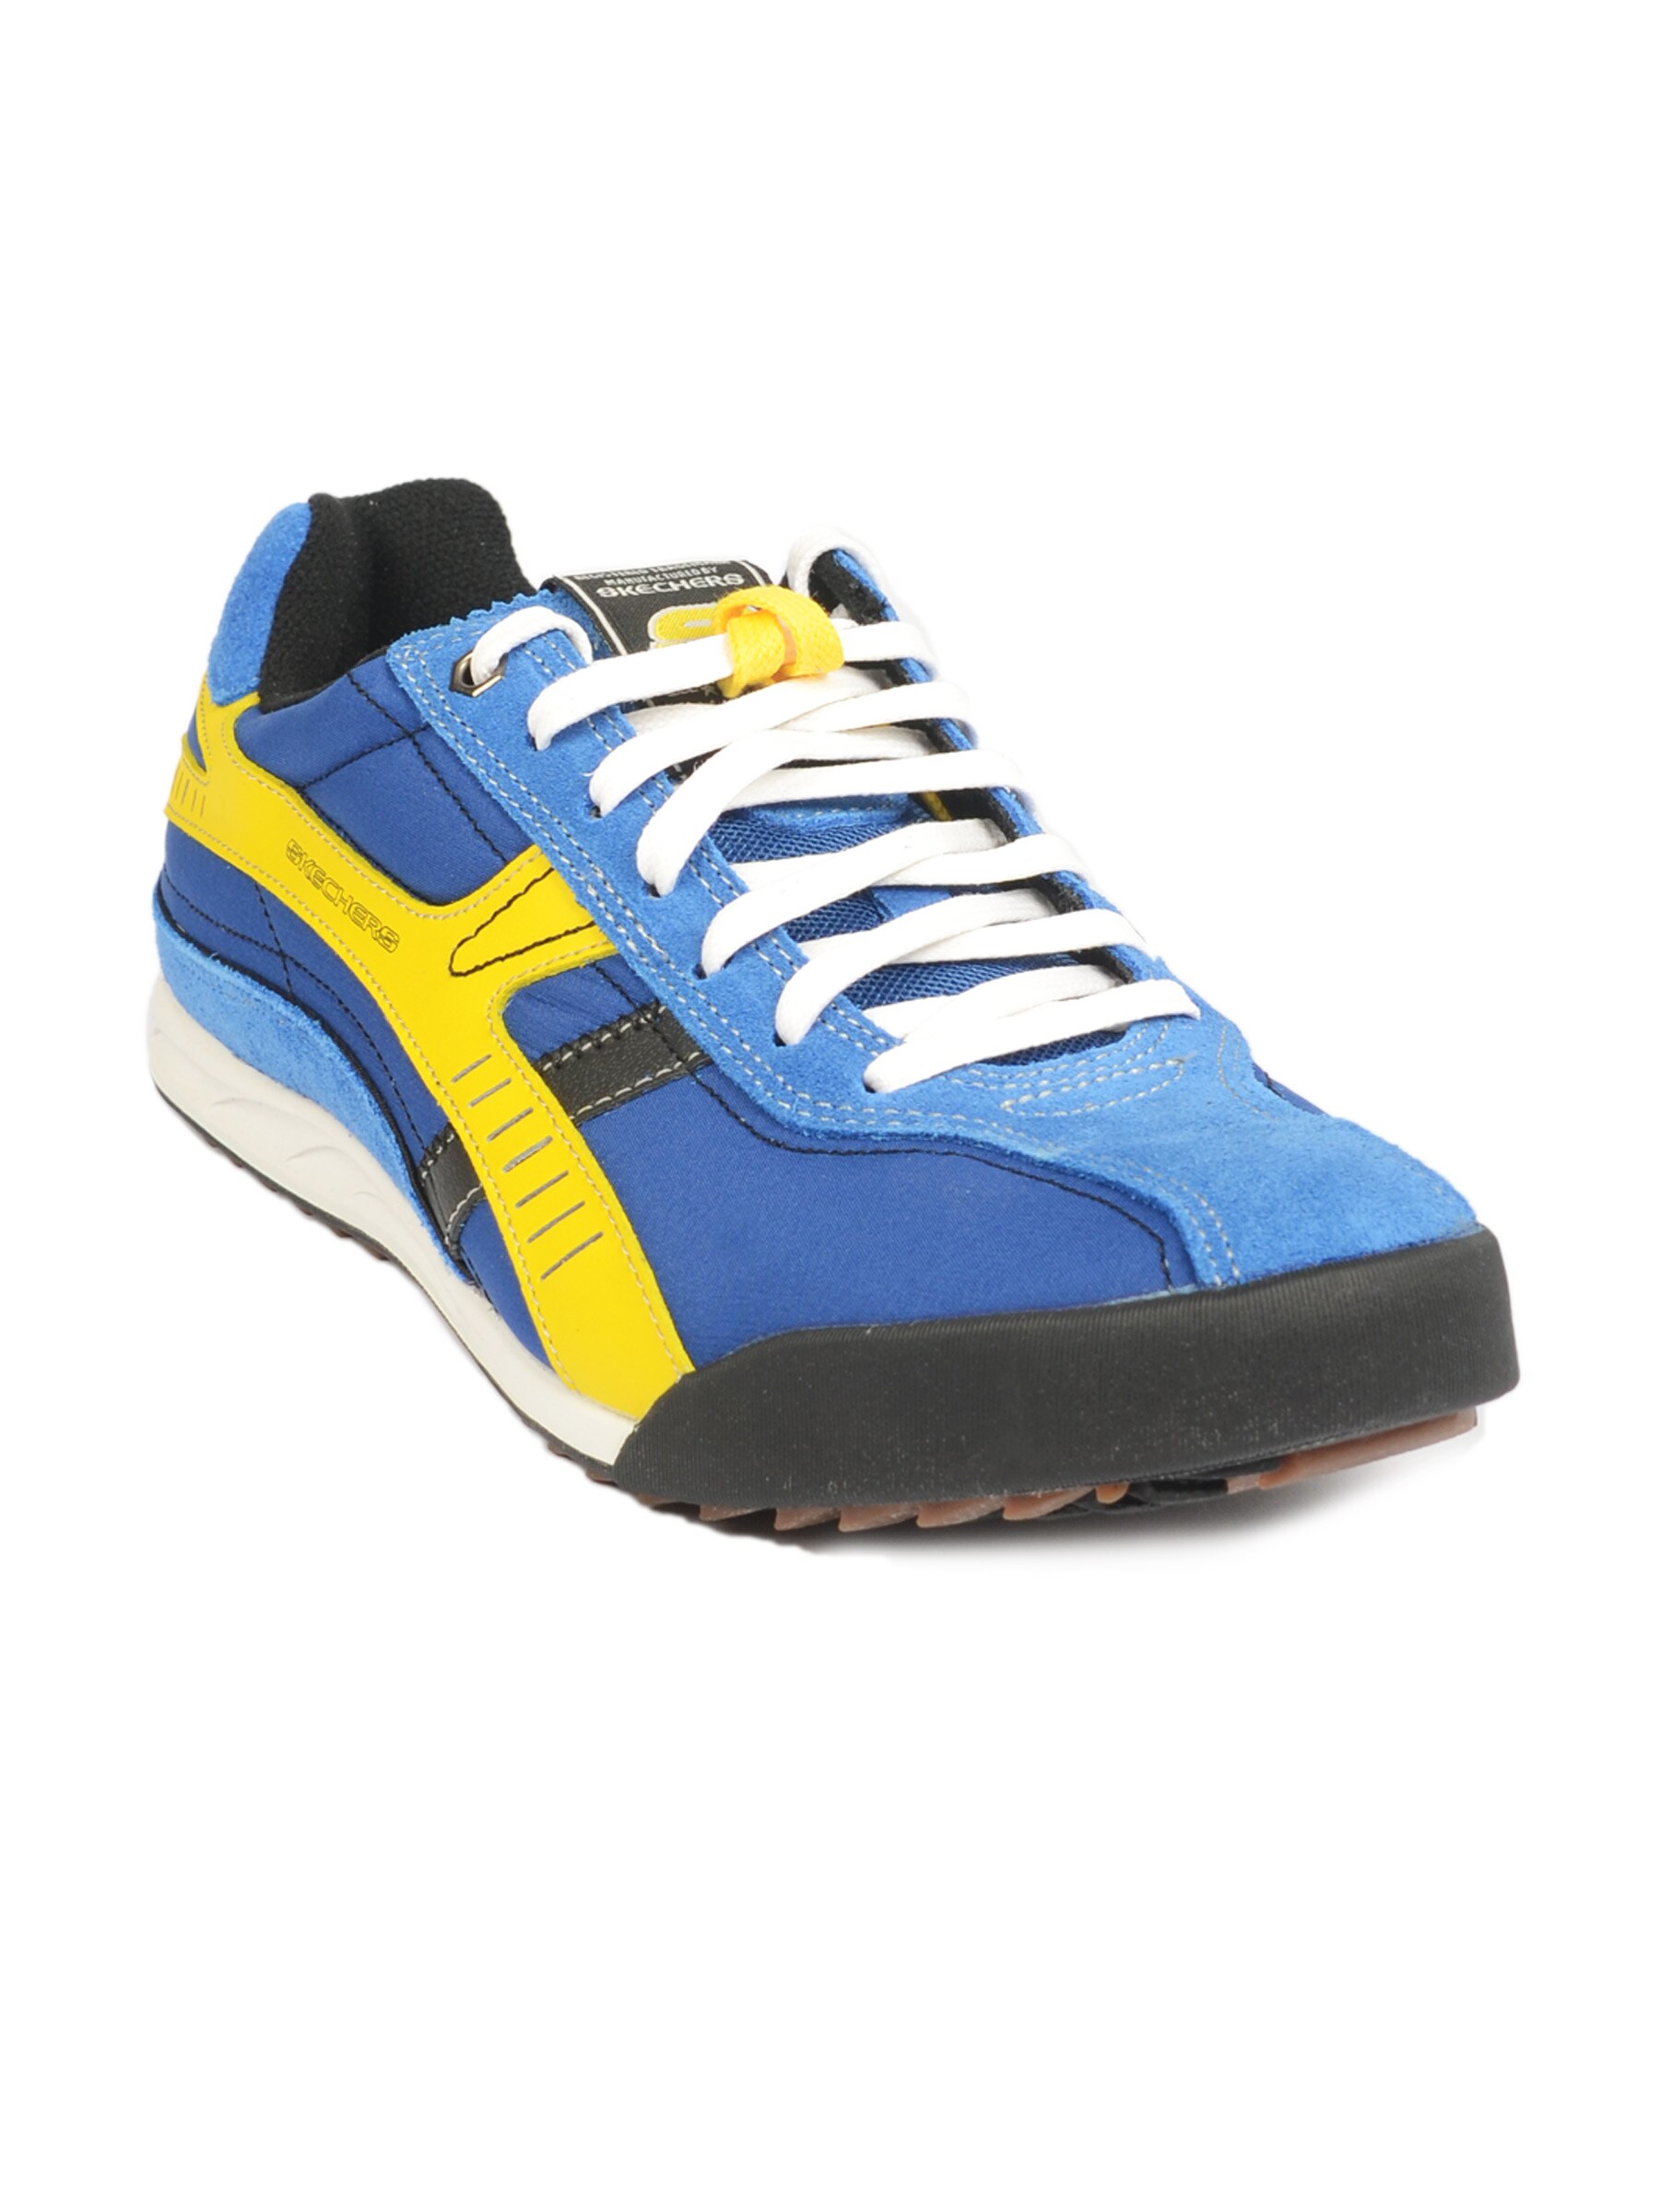 Skechers Men's Sports Blue Yellow Shoe